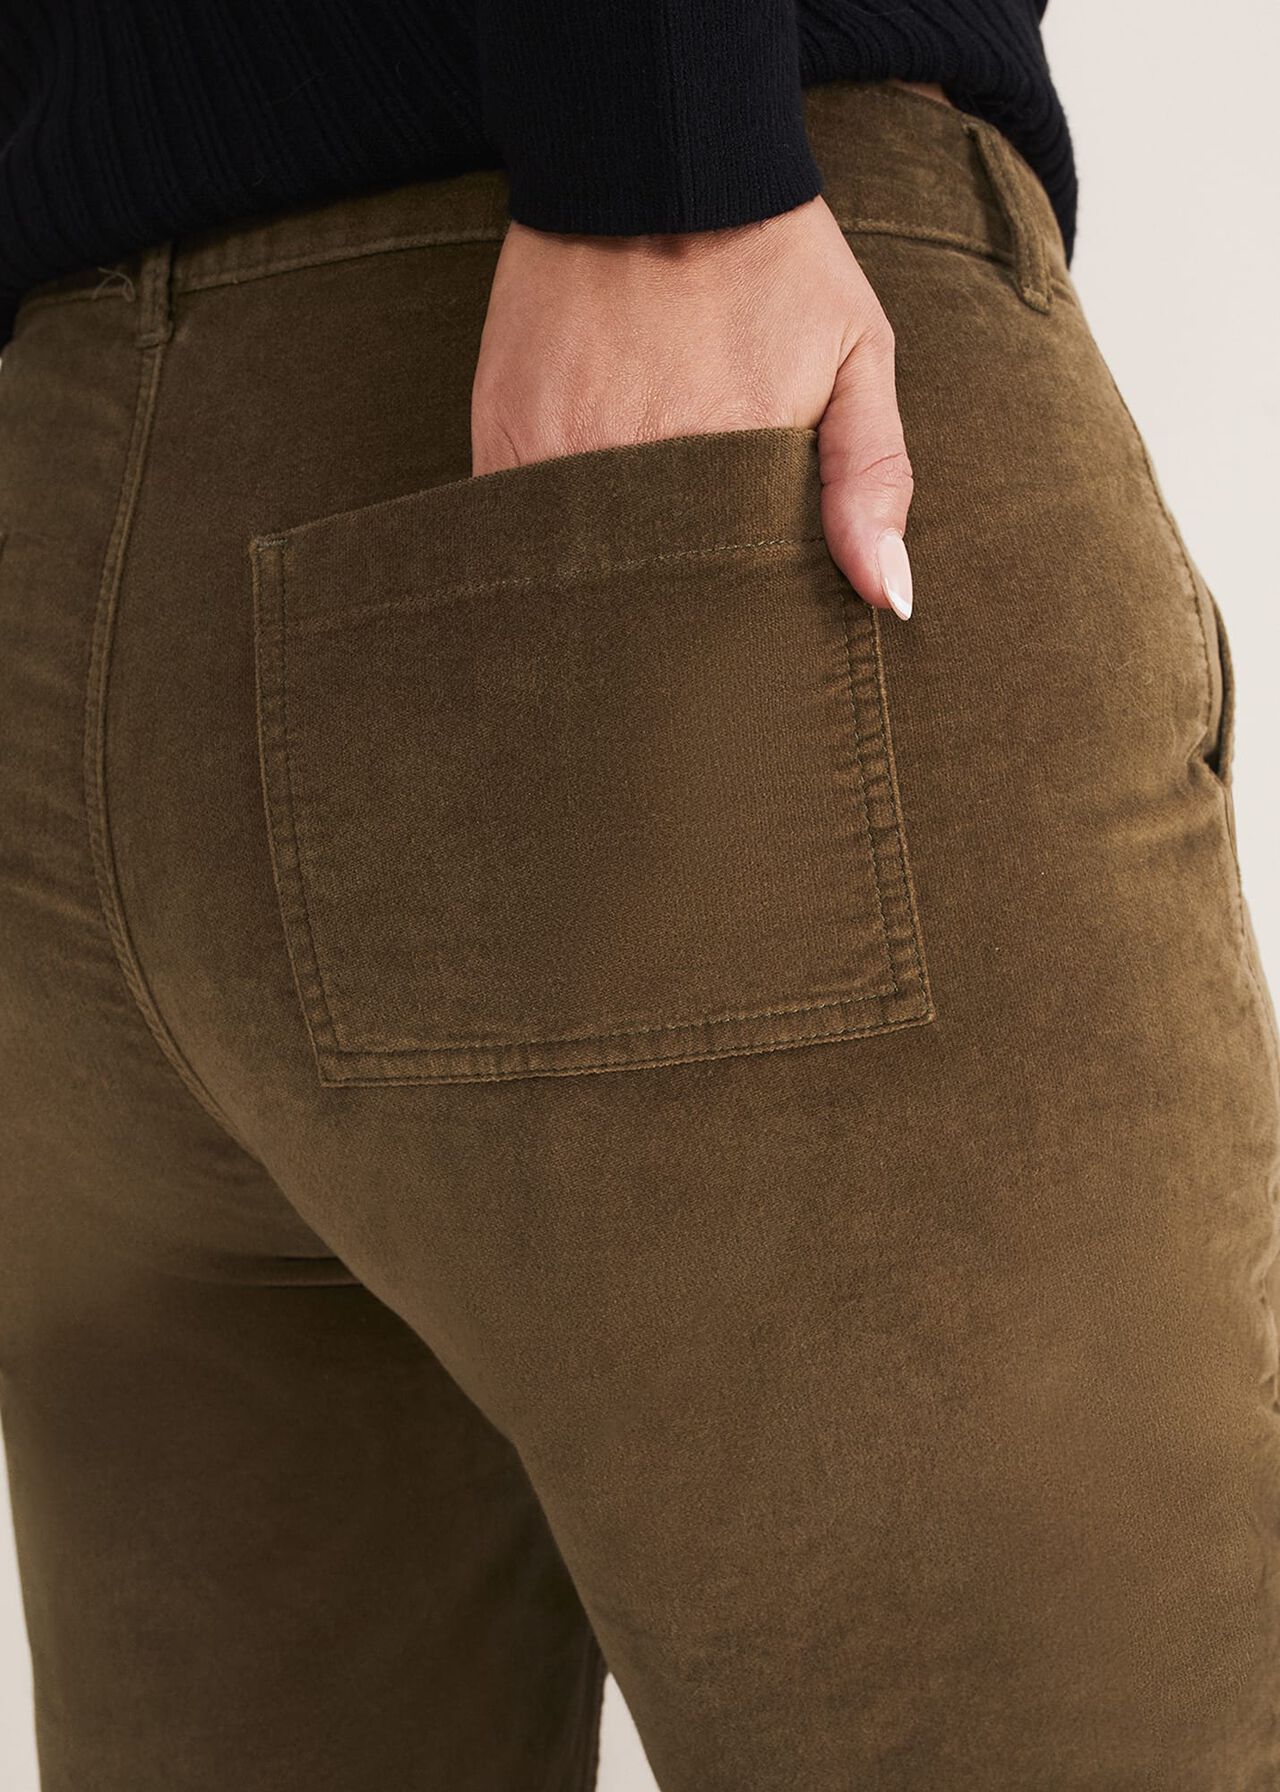 Karlie Button Through Corduroy Jeans